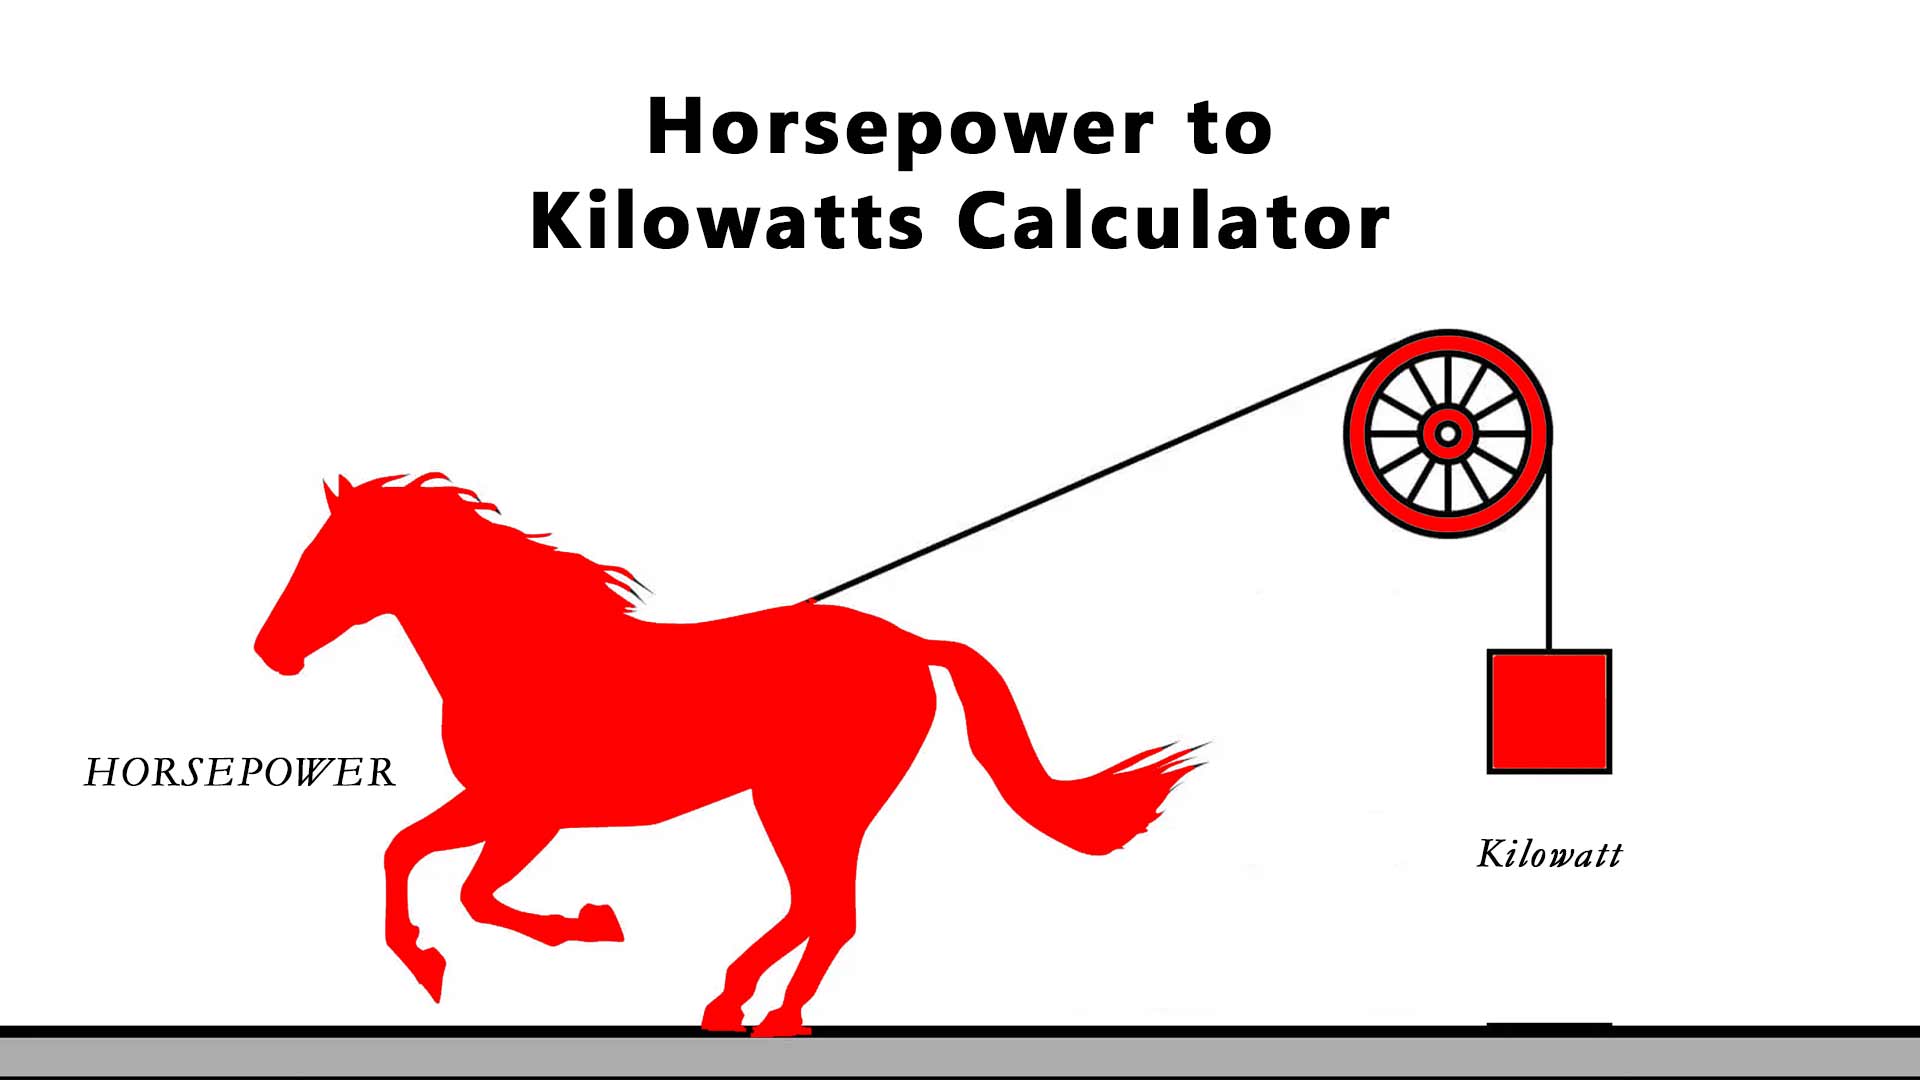 Horsepower to Kilowatts Calculator